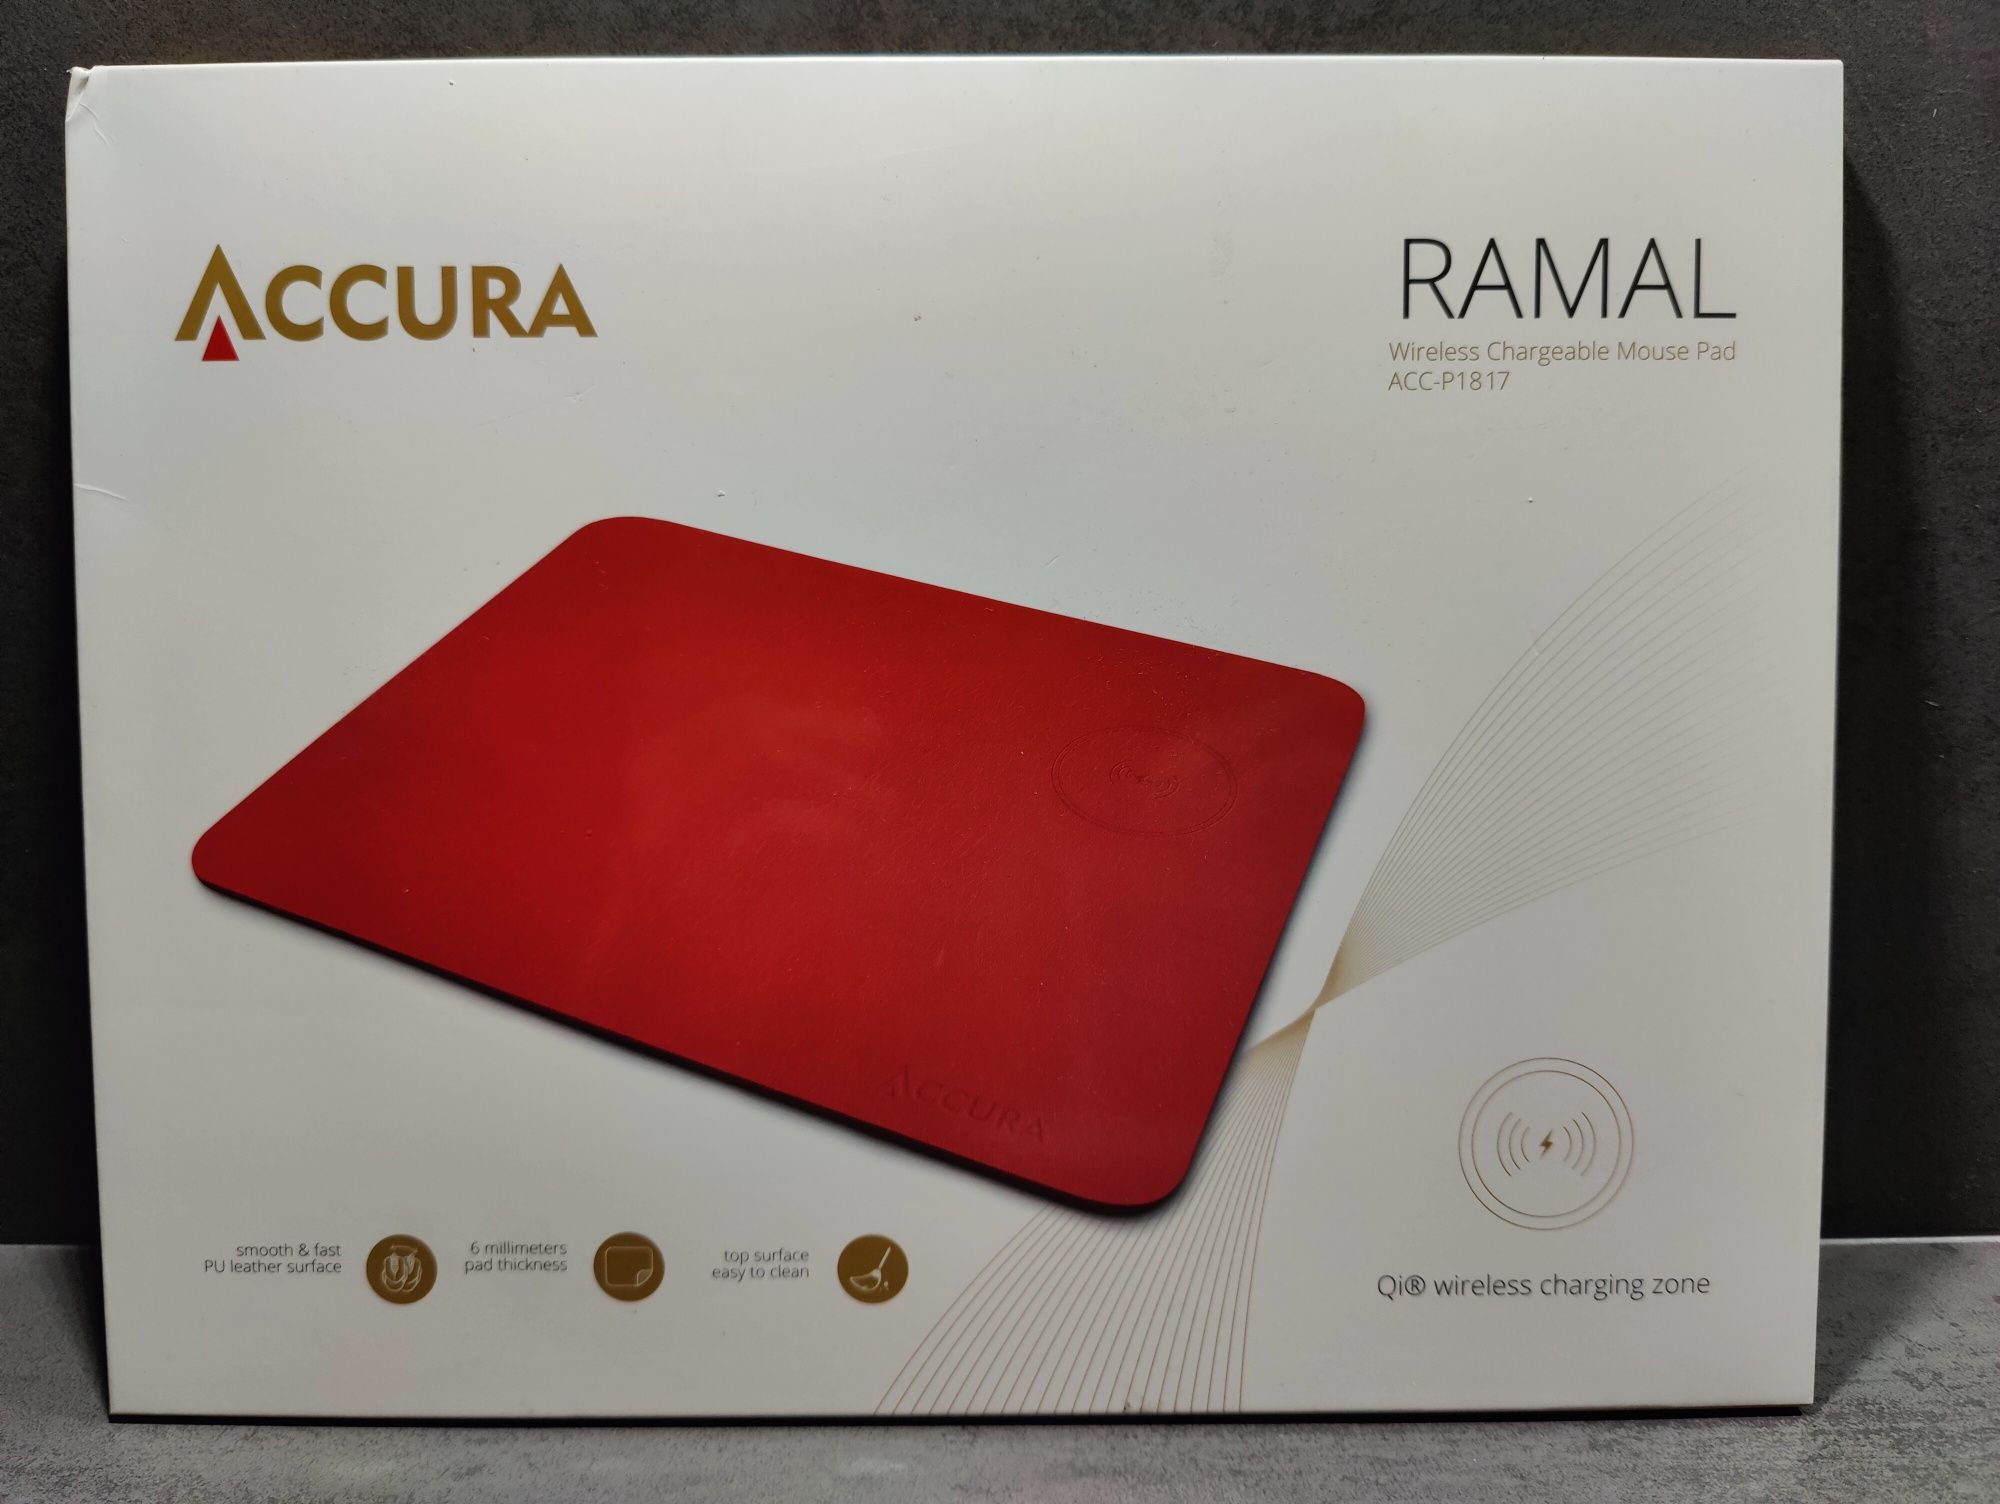 Podkładka pod myszkę Accura RAMAL ACC-P1817 USB ładowanie indukcyjne